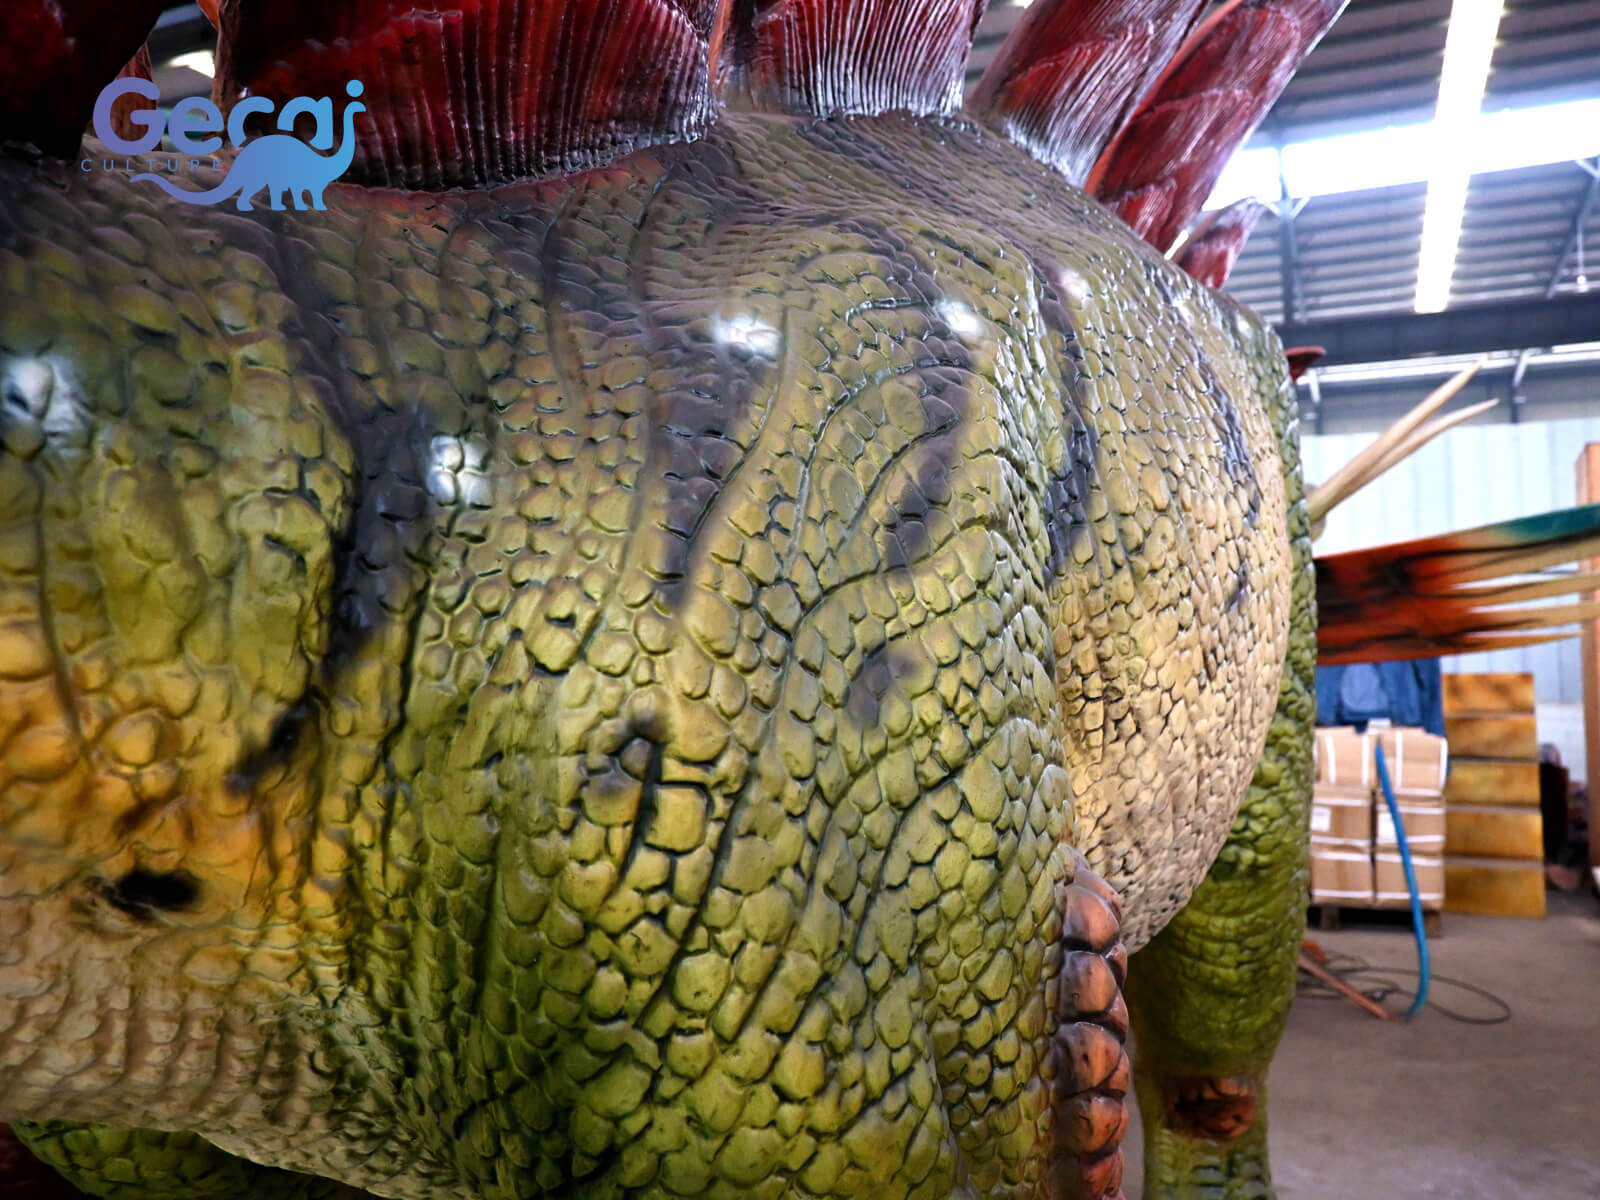 Realistic Animatronic Stegosaurus Statue for Museum